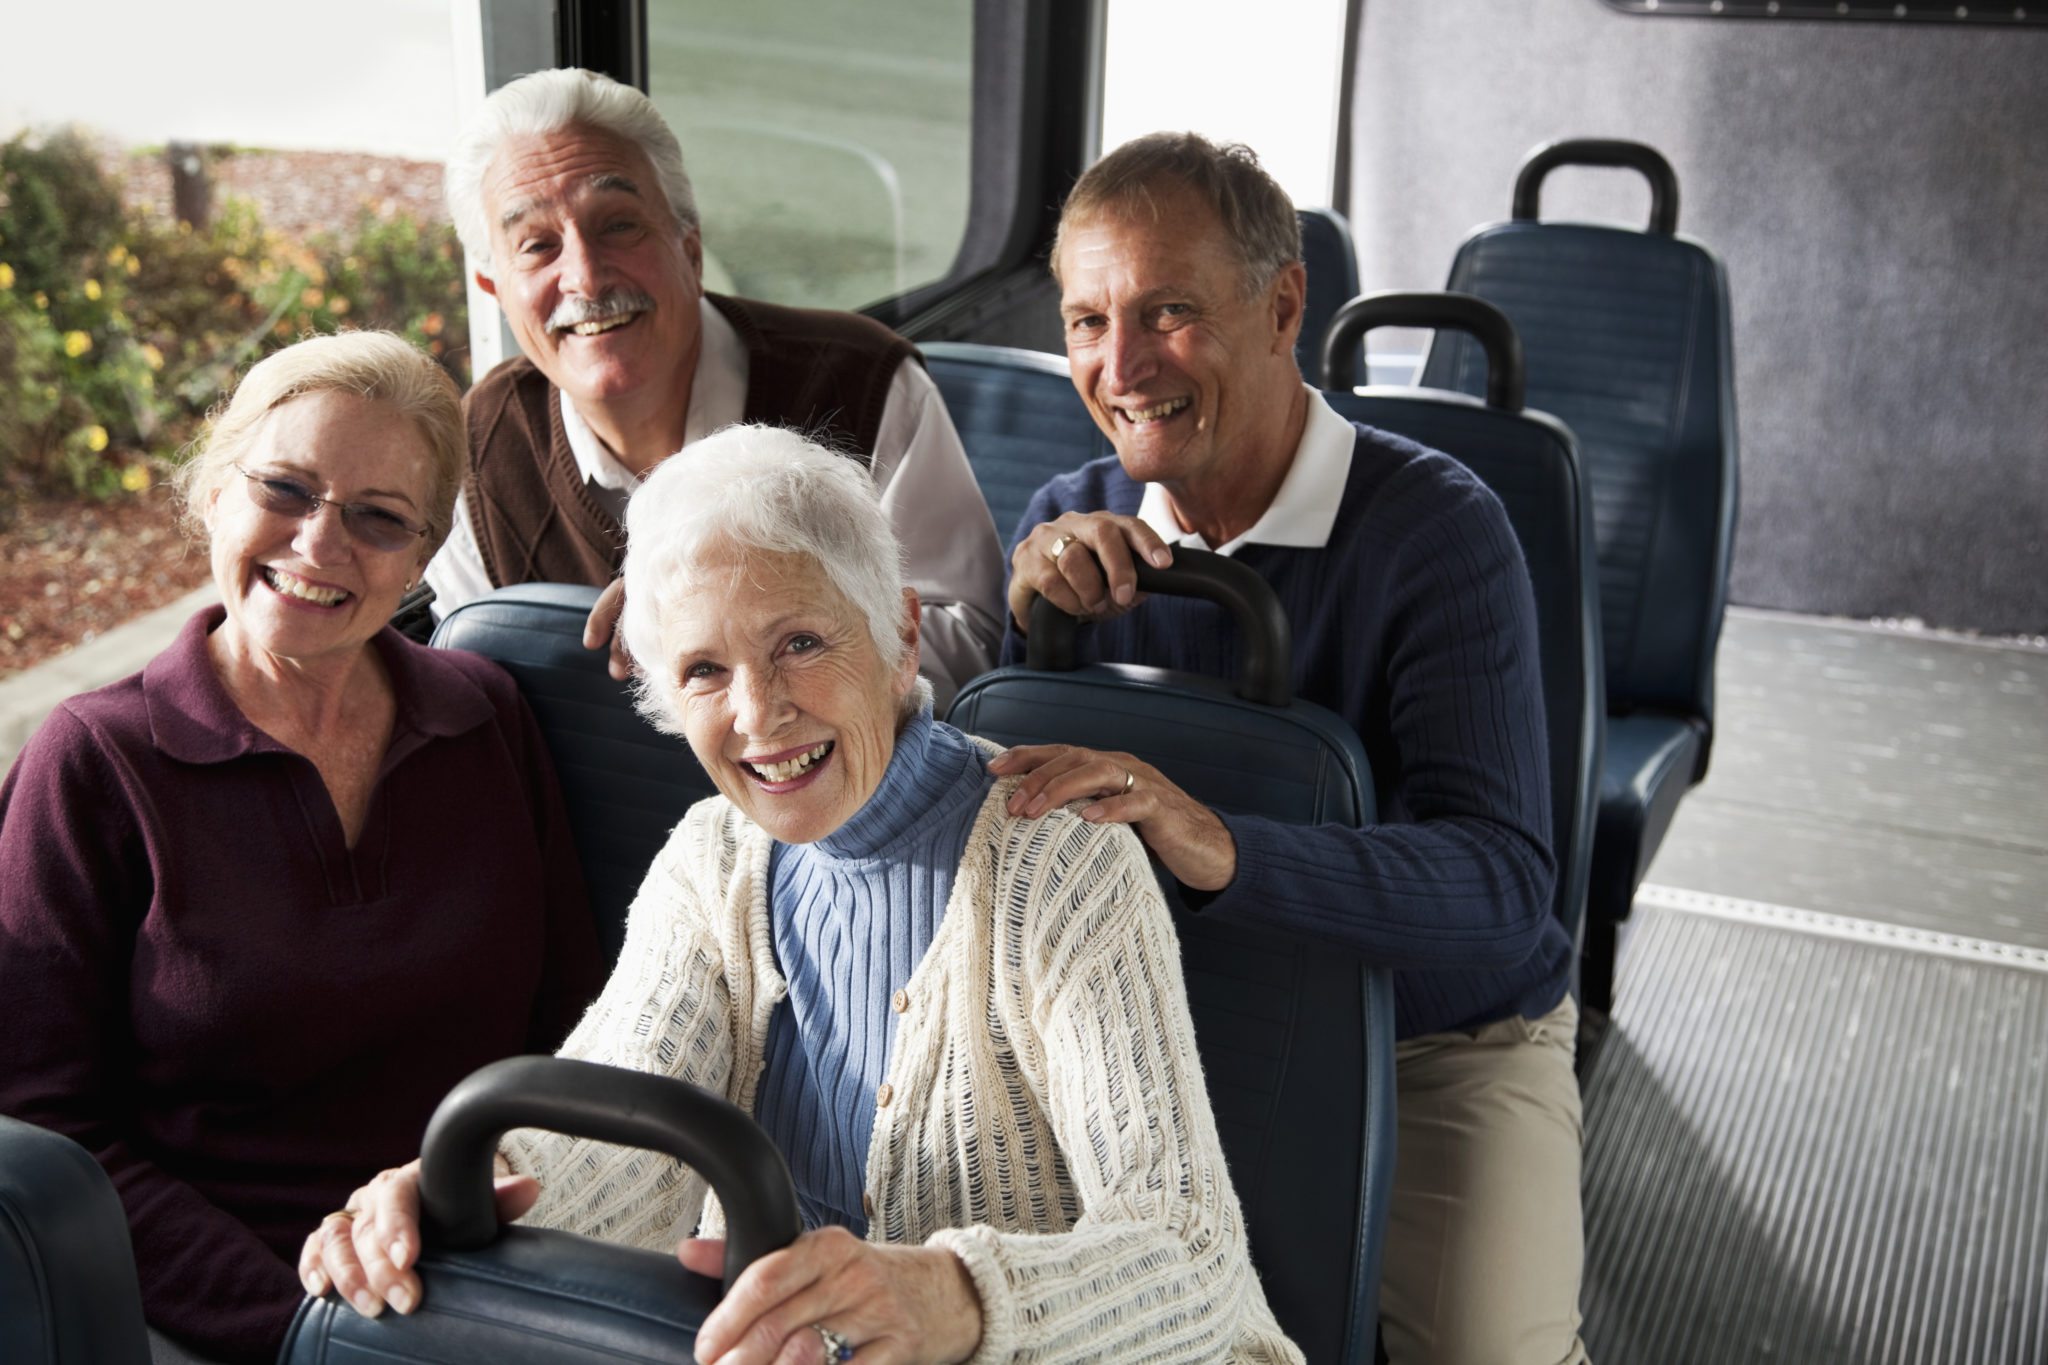 bus trips for senior citizens